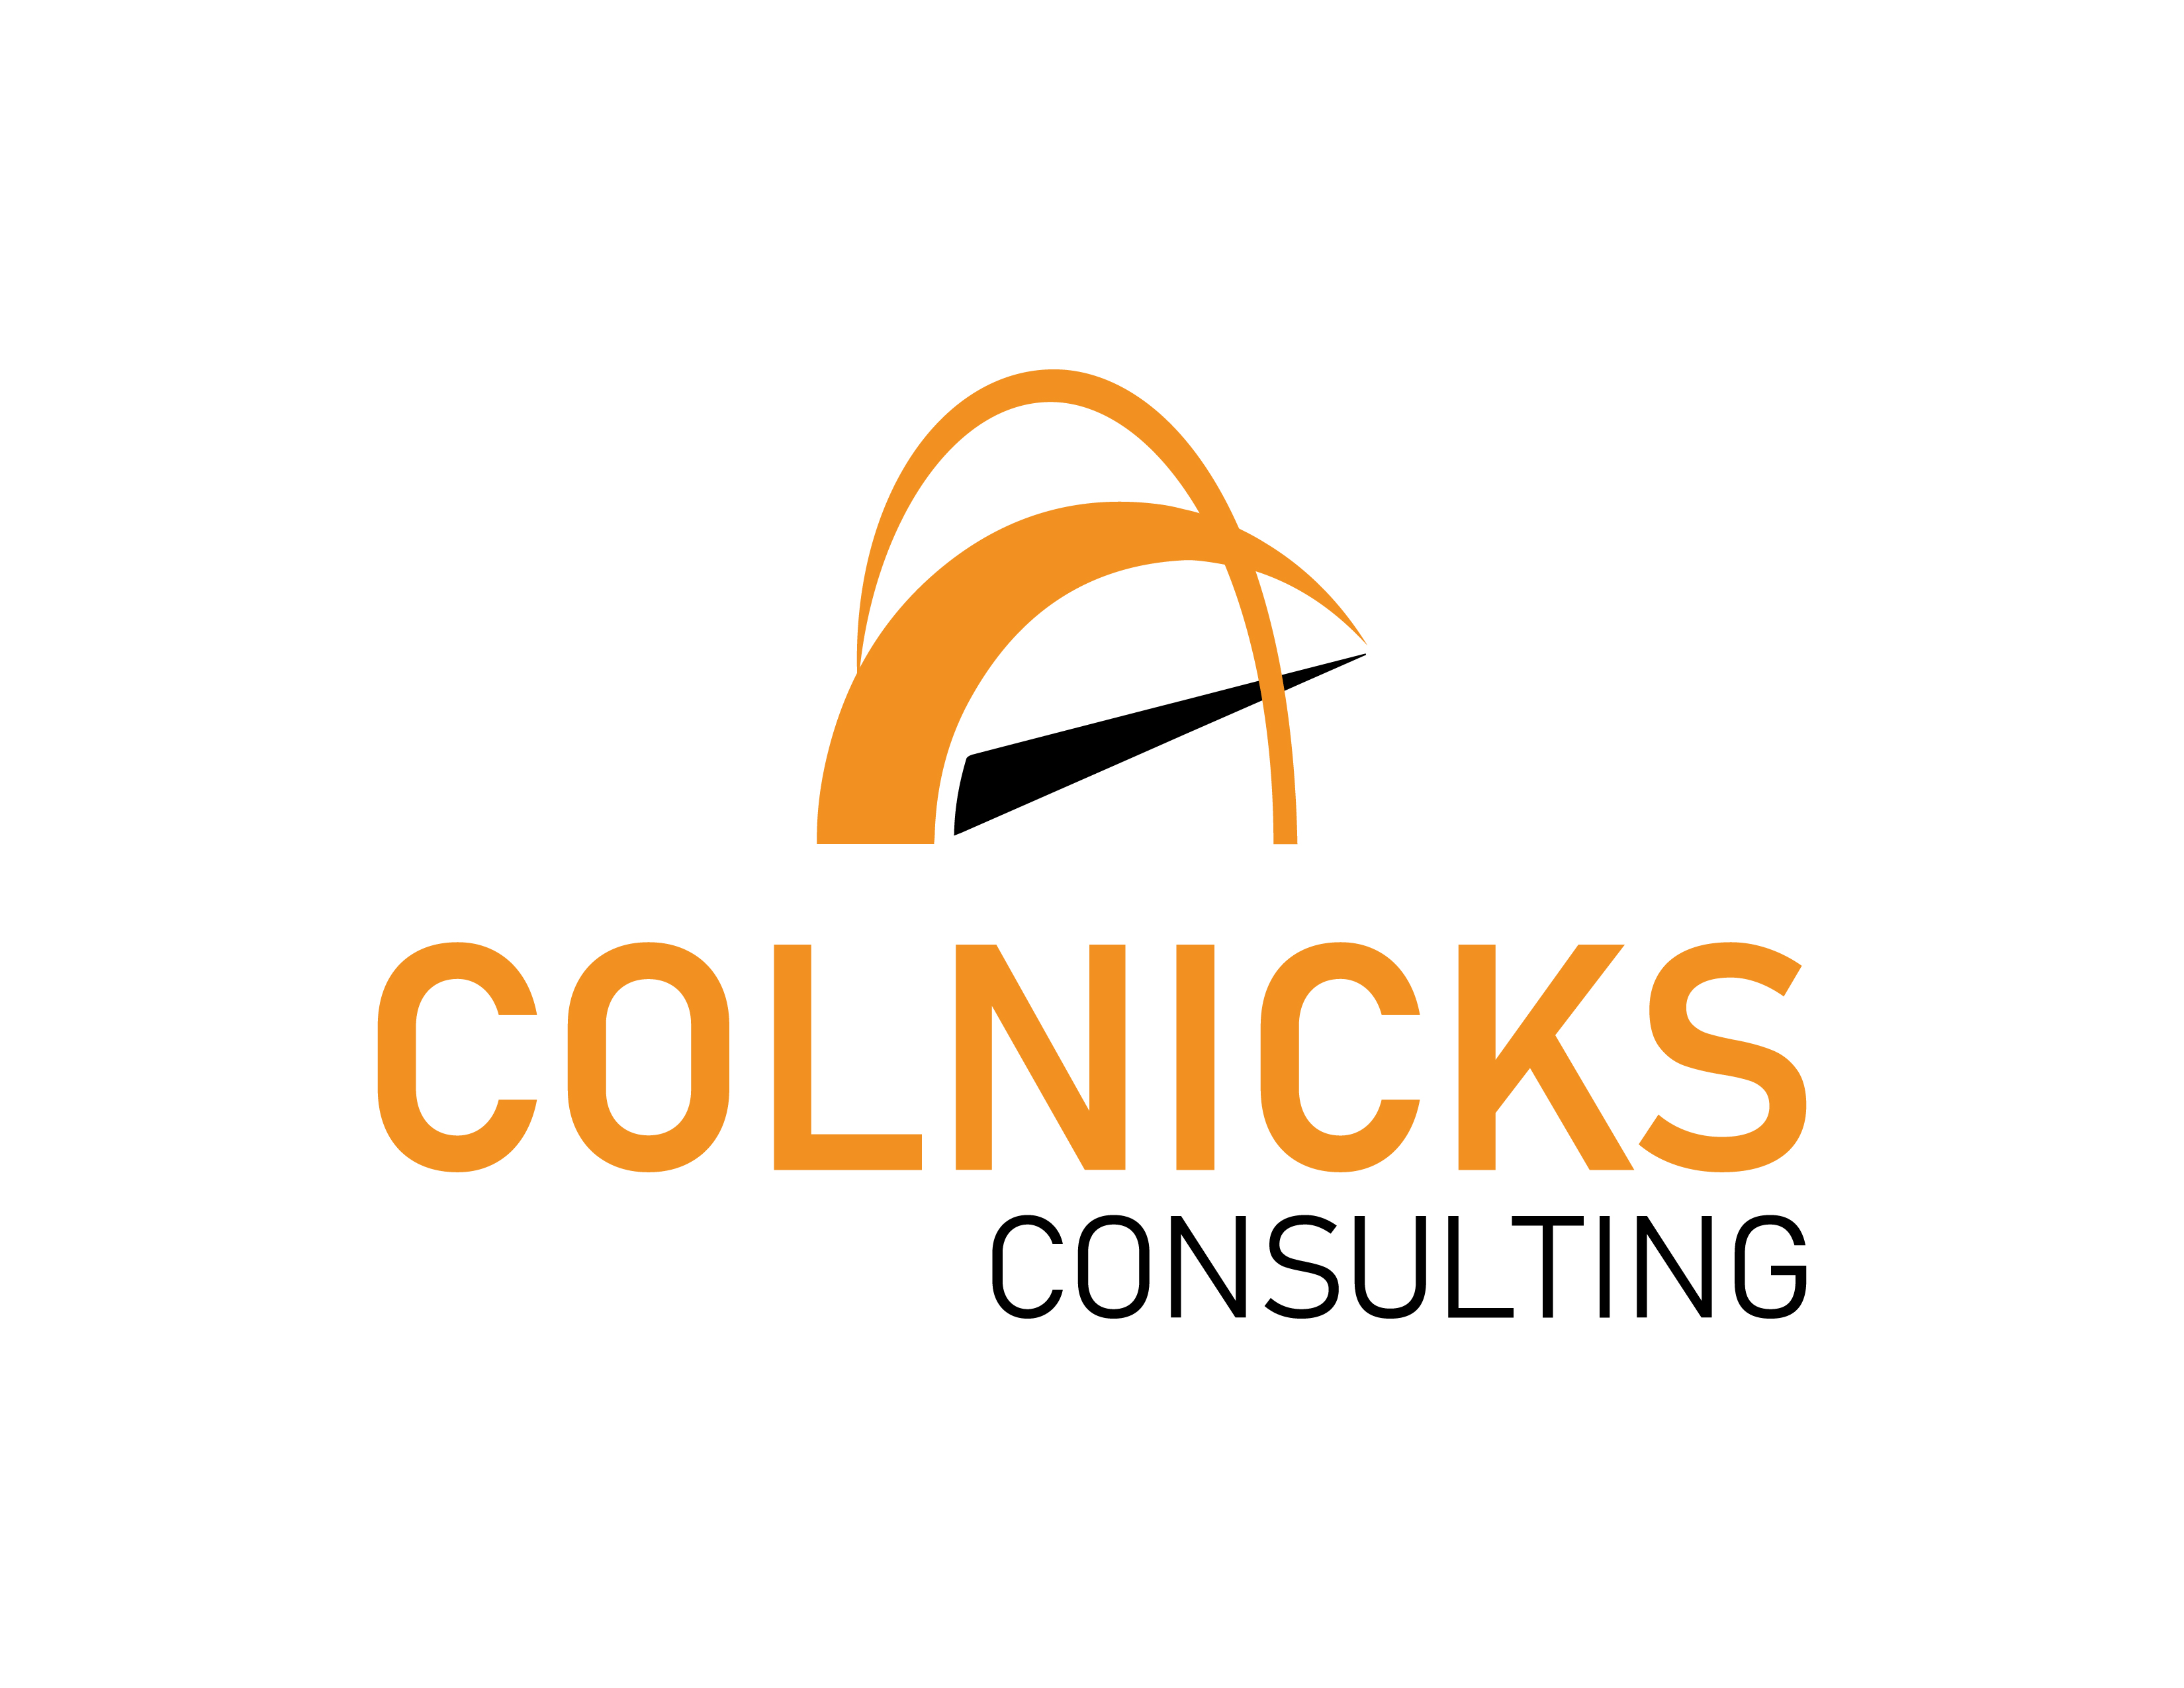 Colnicks Global Consulting - España - Servicios a empresas